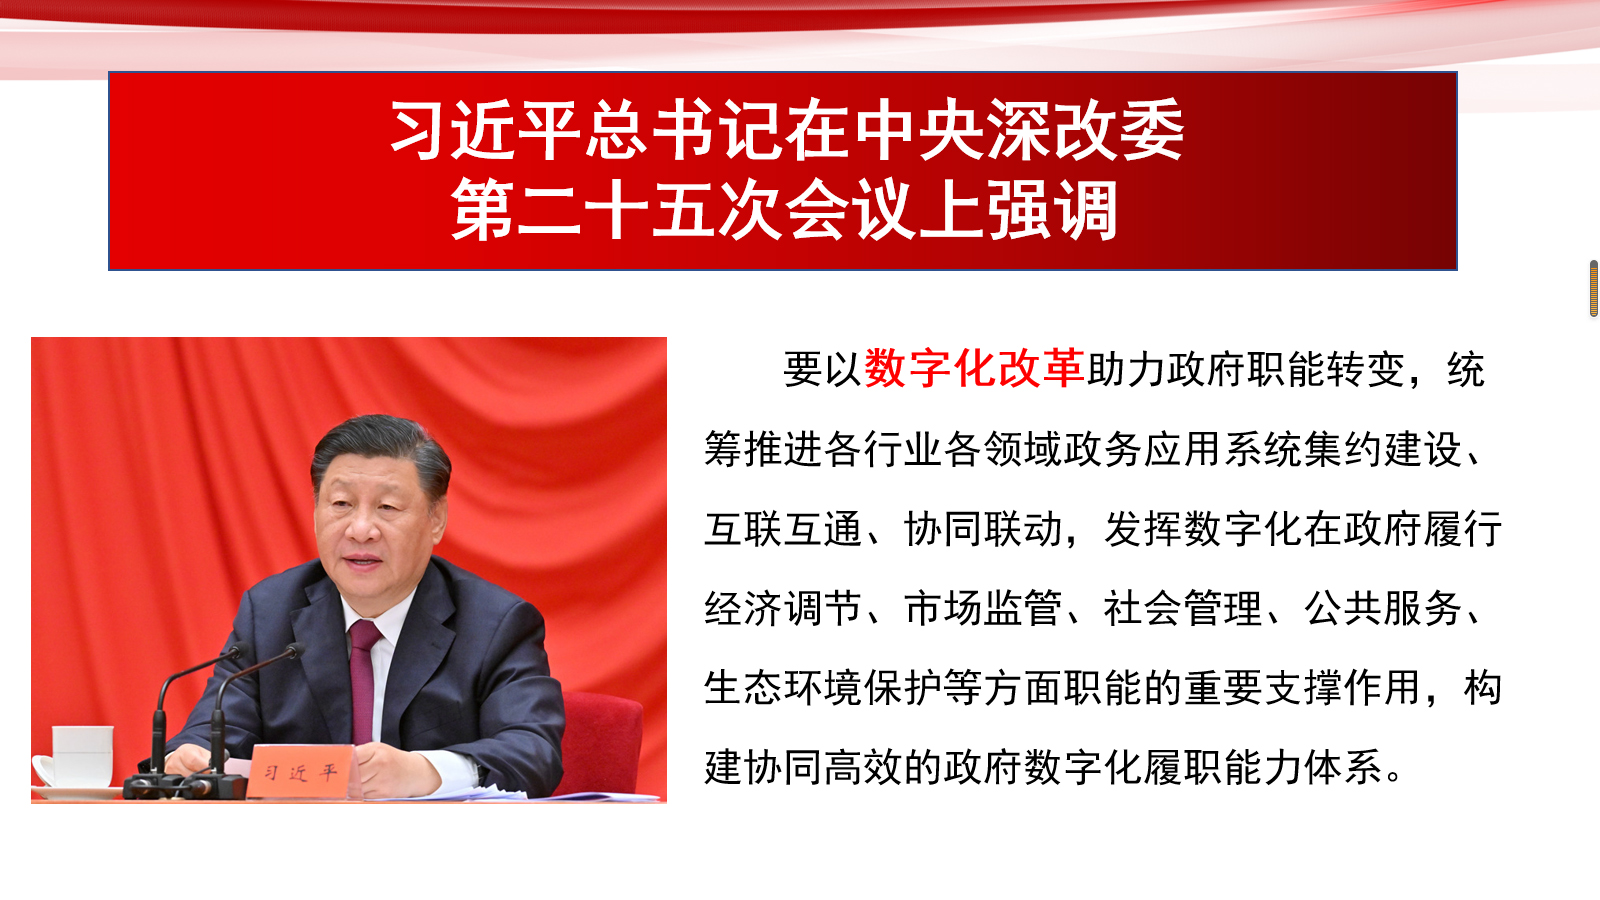 习近平总书记在中央深改委第二十五次会议上强调